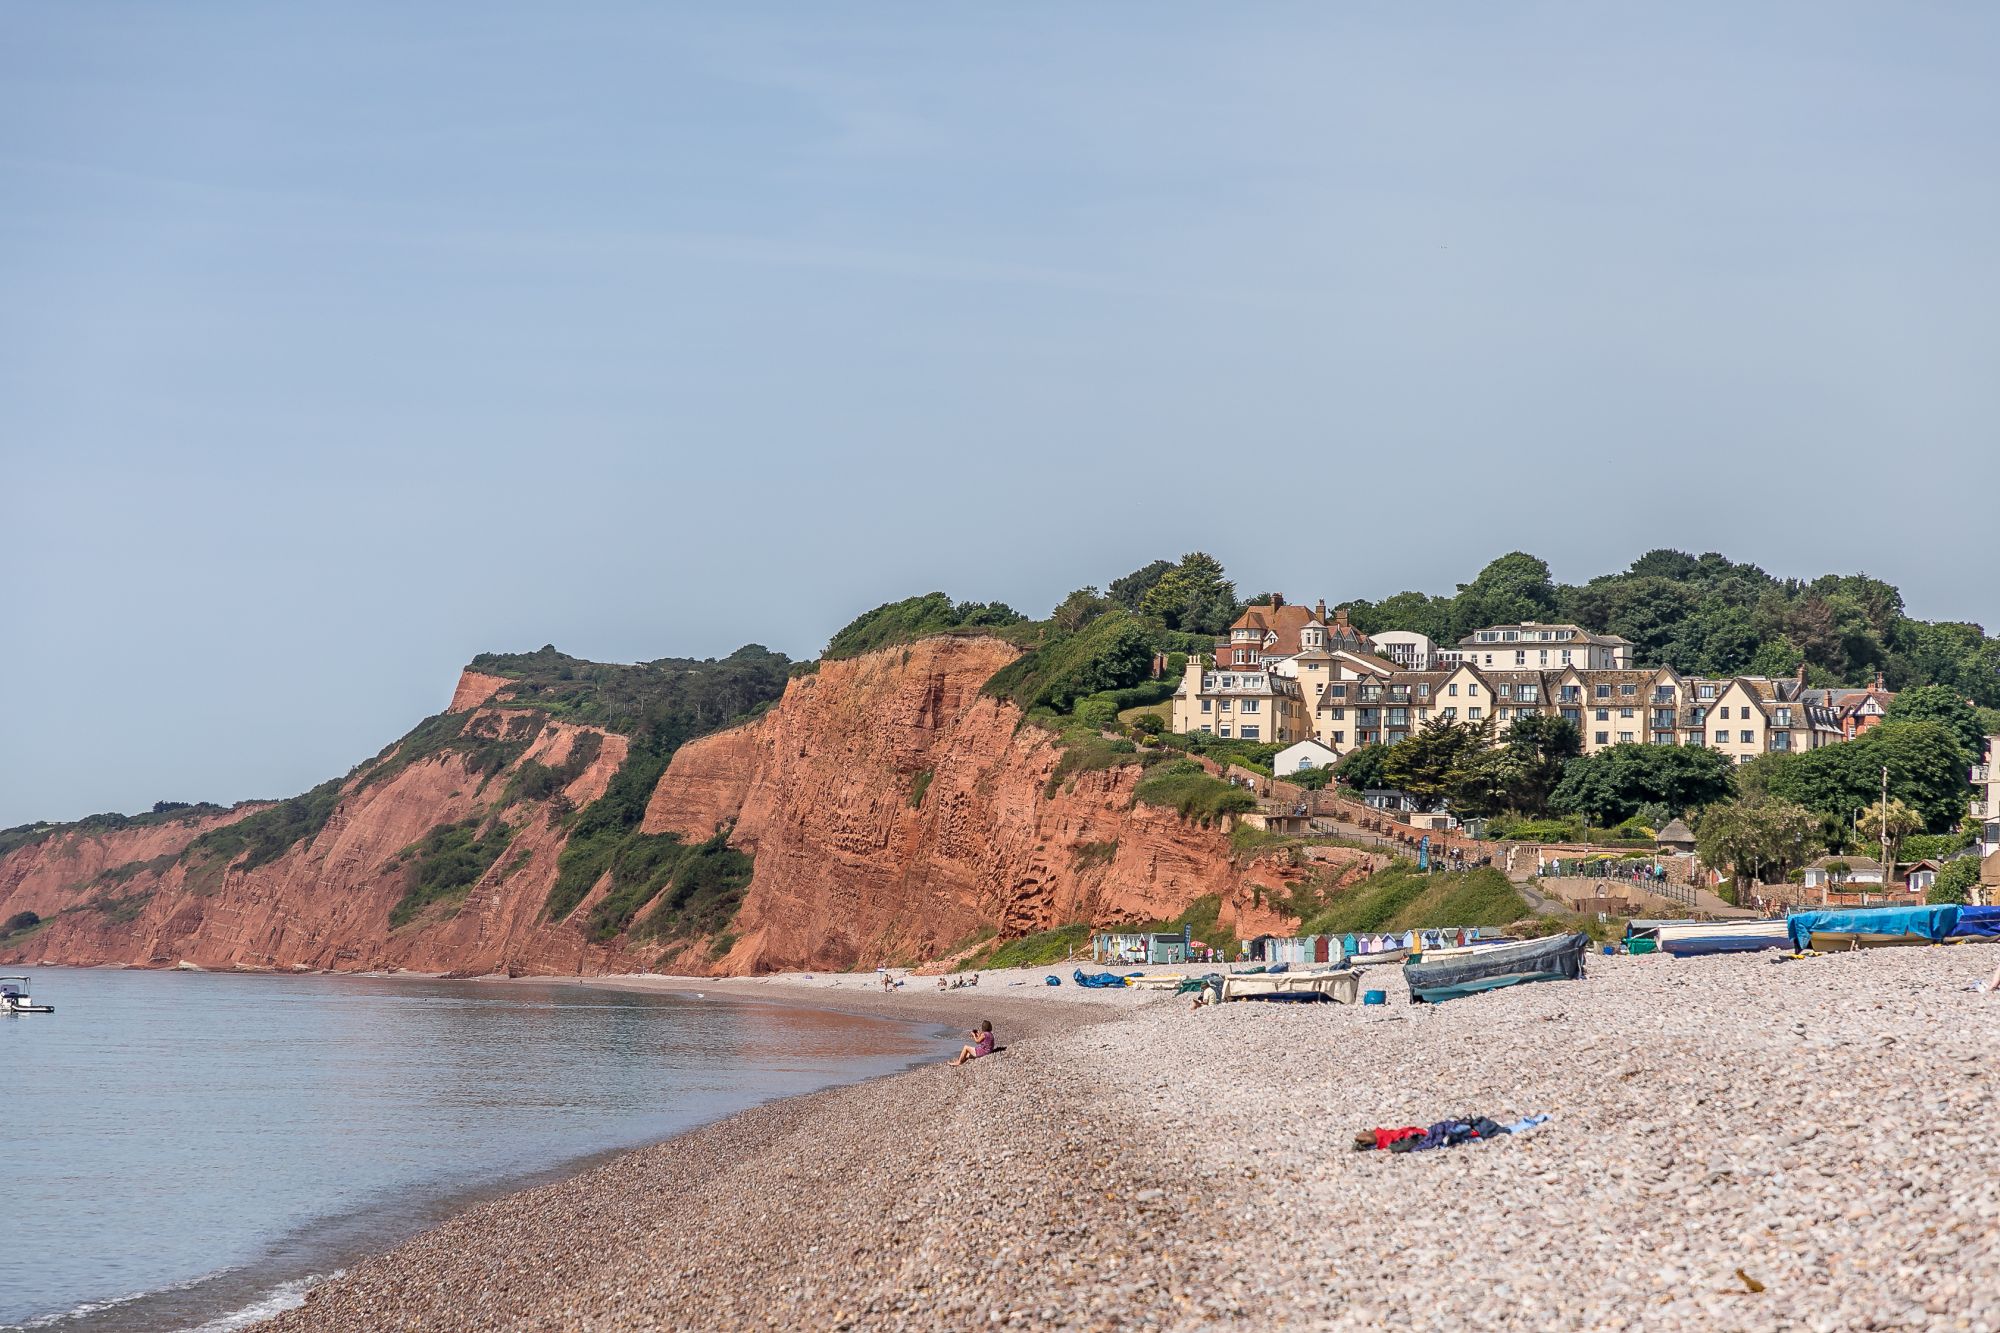 Luxury Coastal Devon Holidays by the Sea